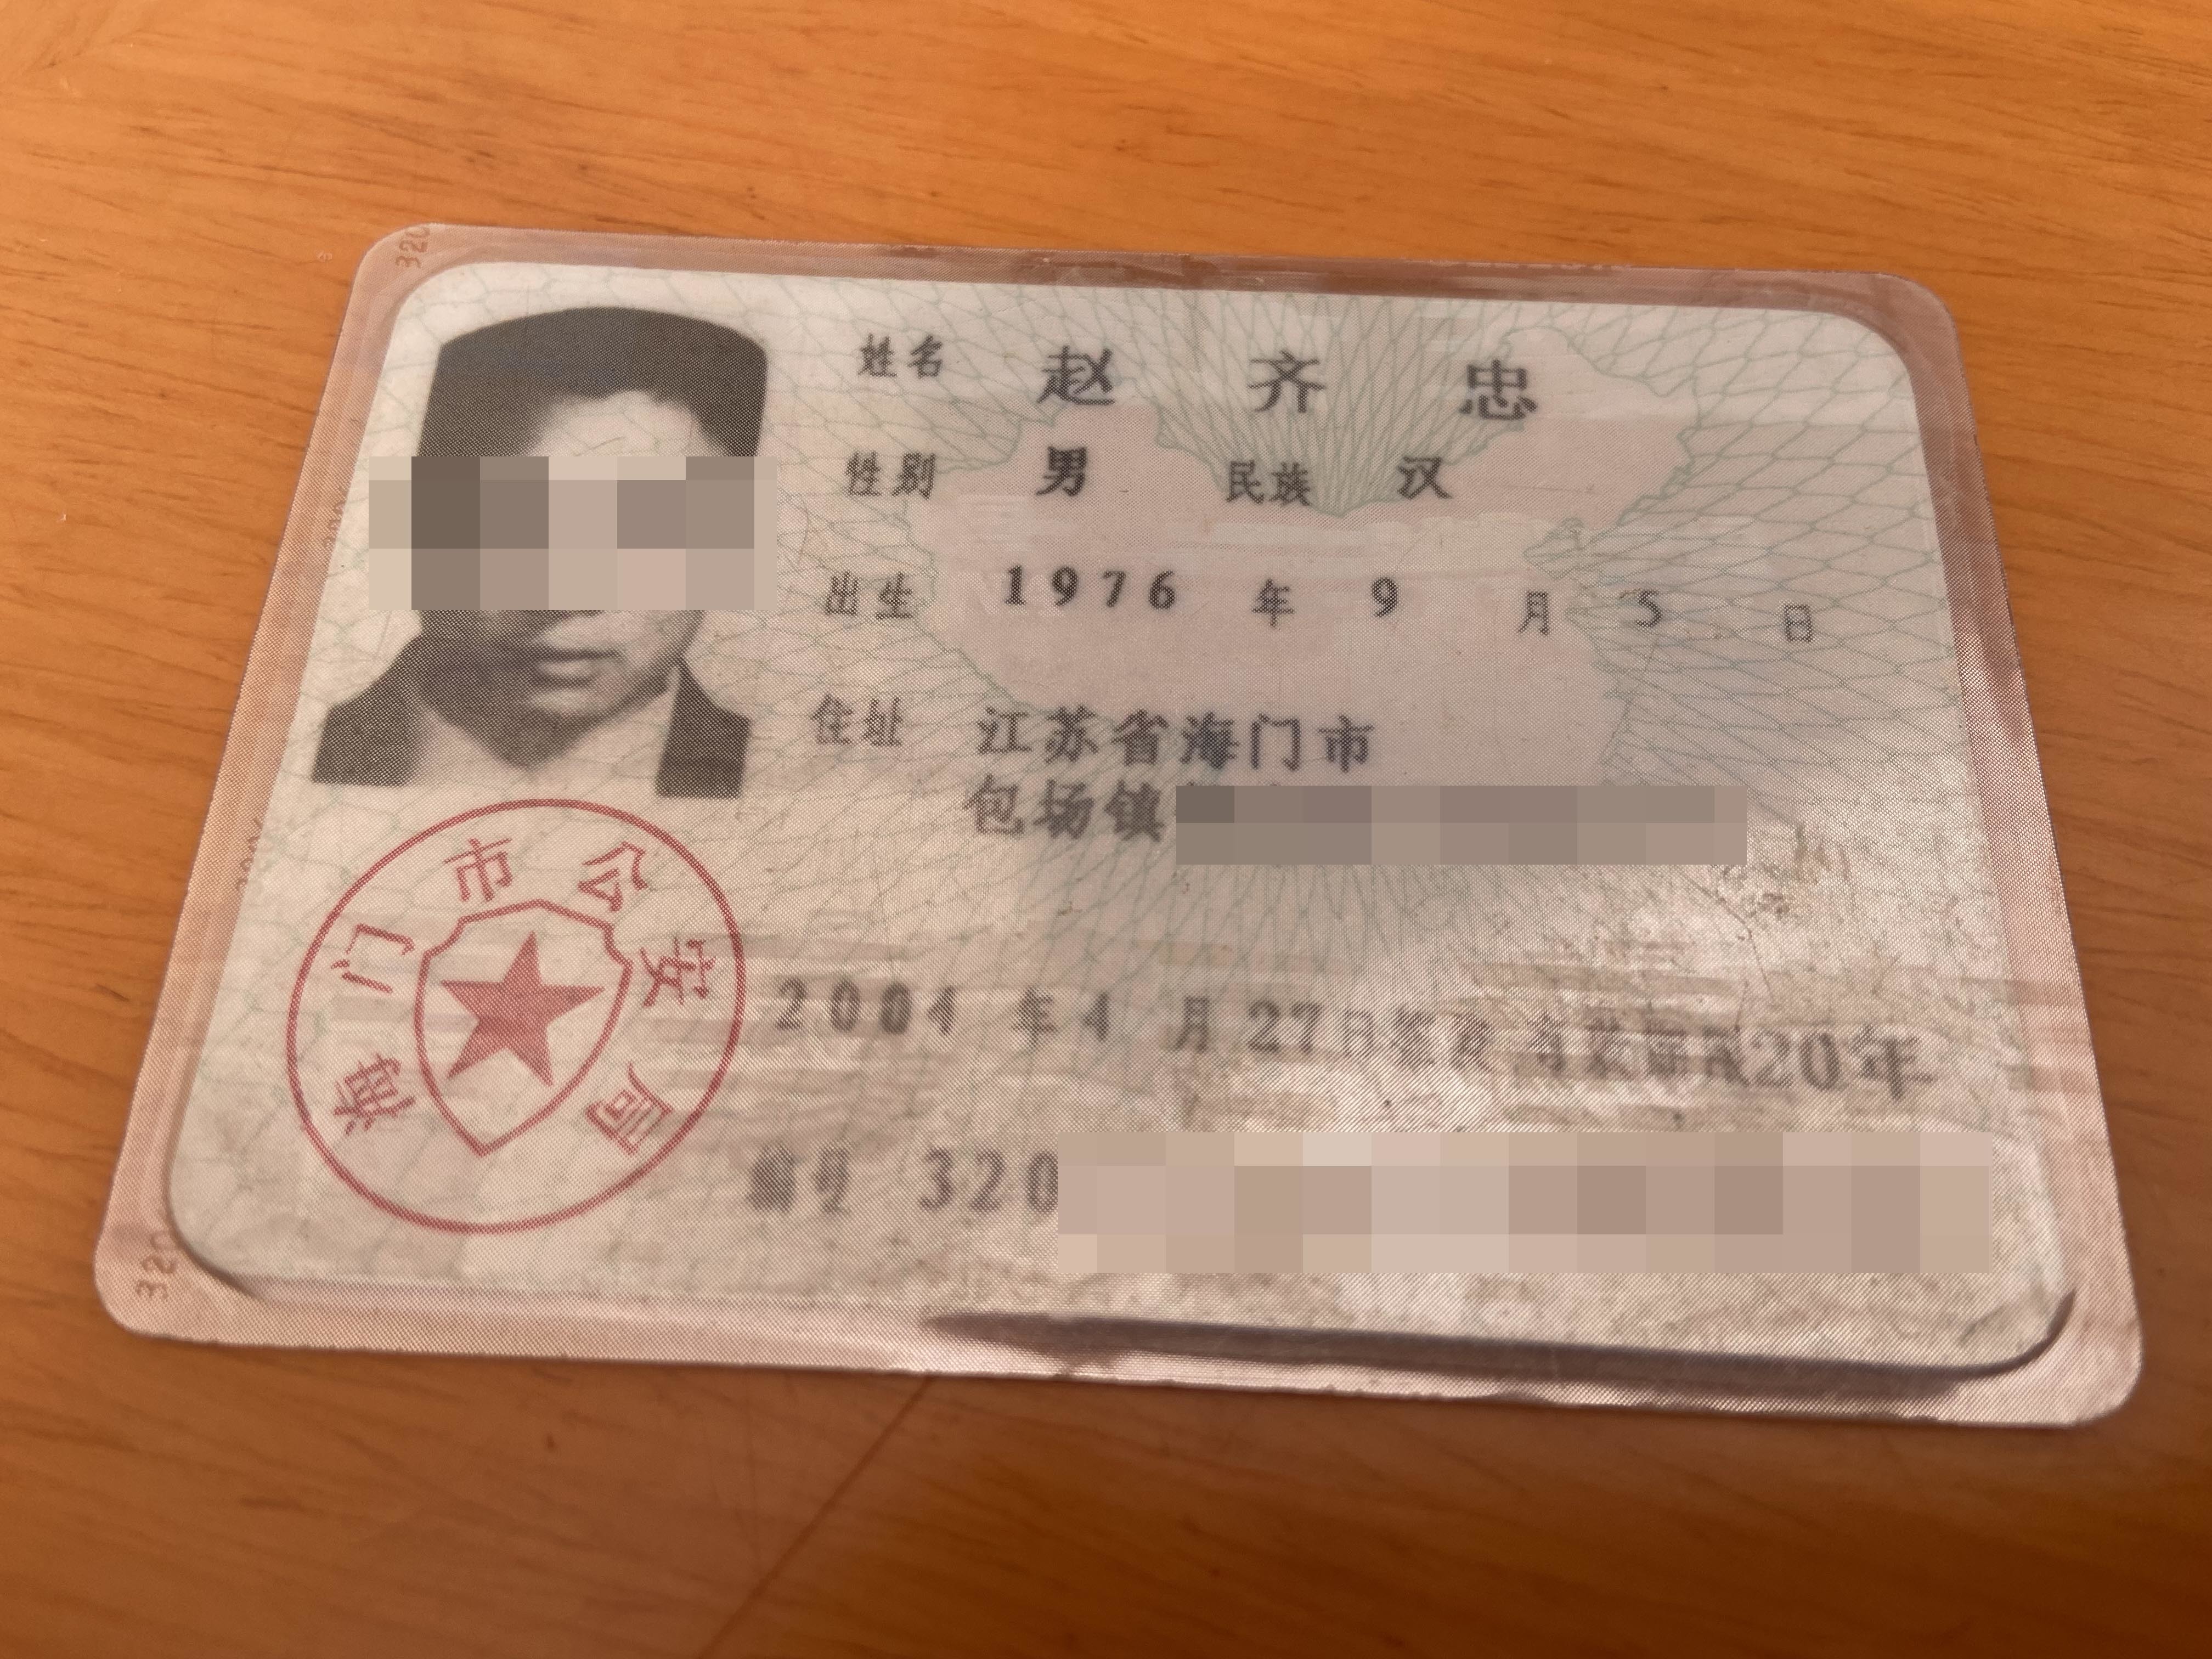 被杜某发借走身份证未归还后,赵齐忠补办了一代身份证